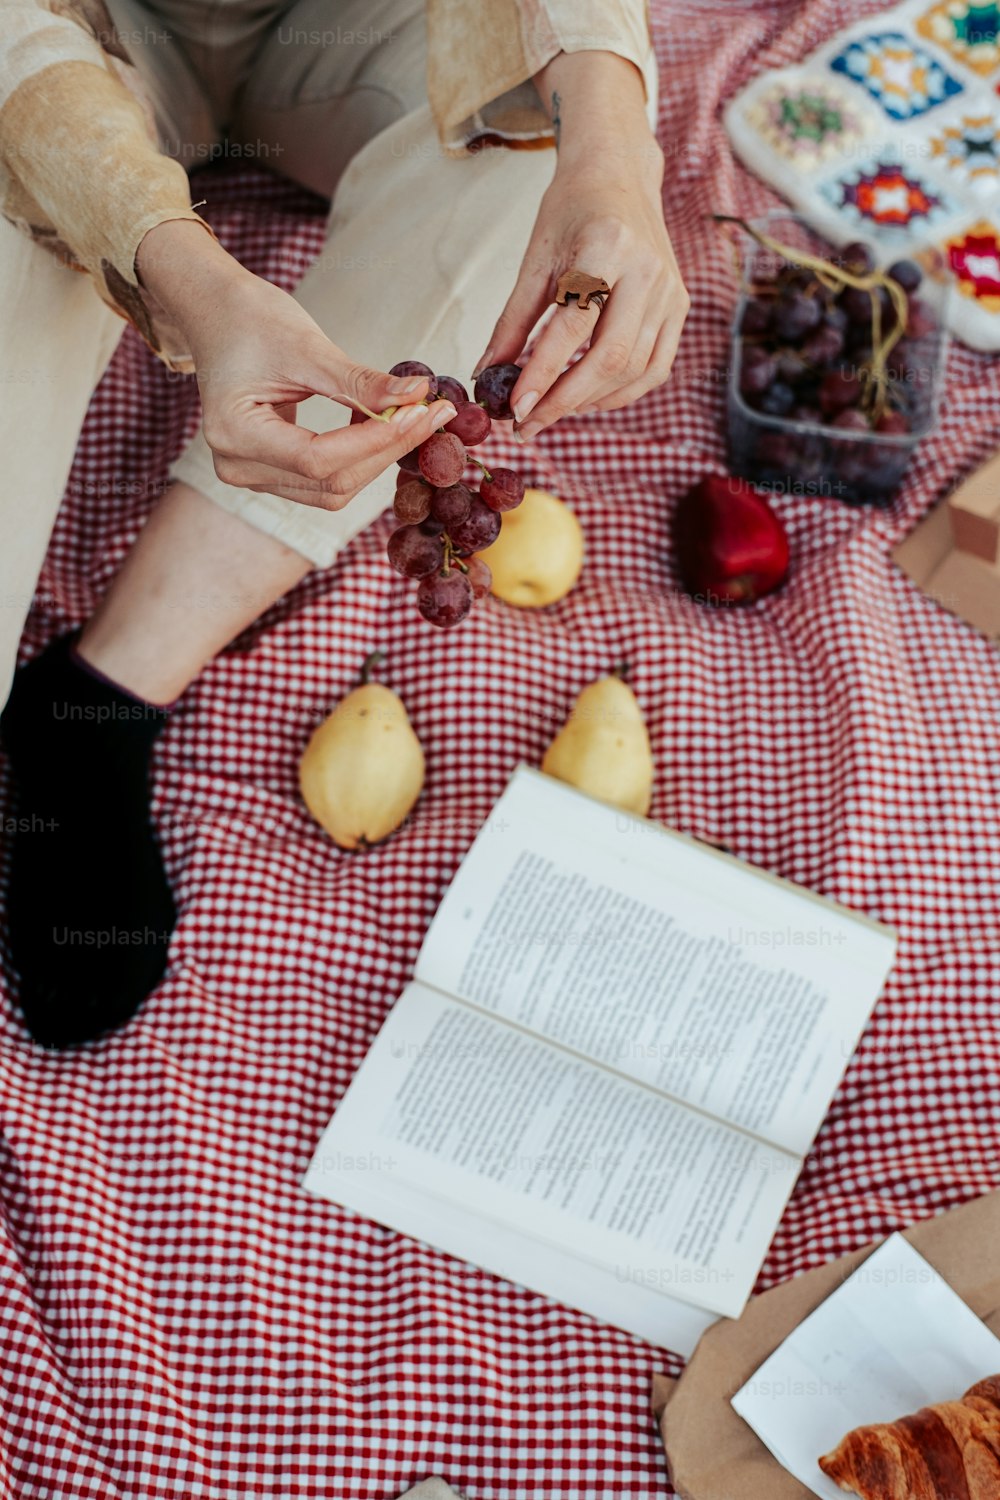 une personne assise sur une couverture avec un livre et des fruits